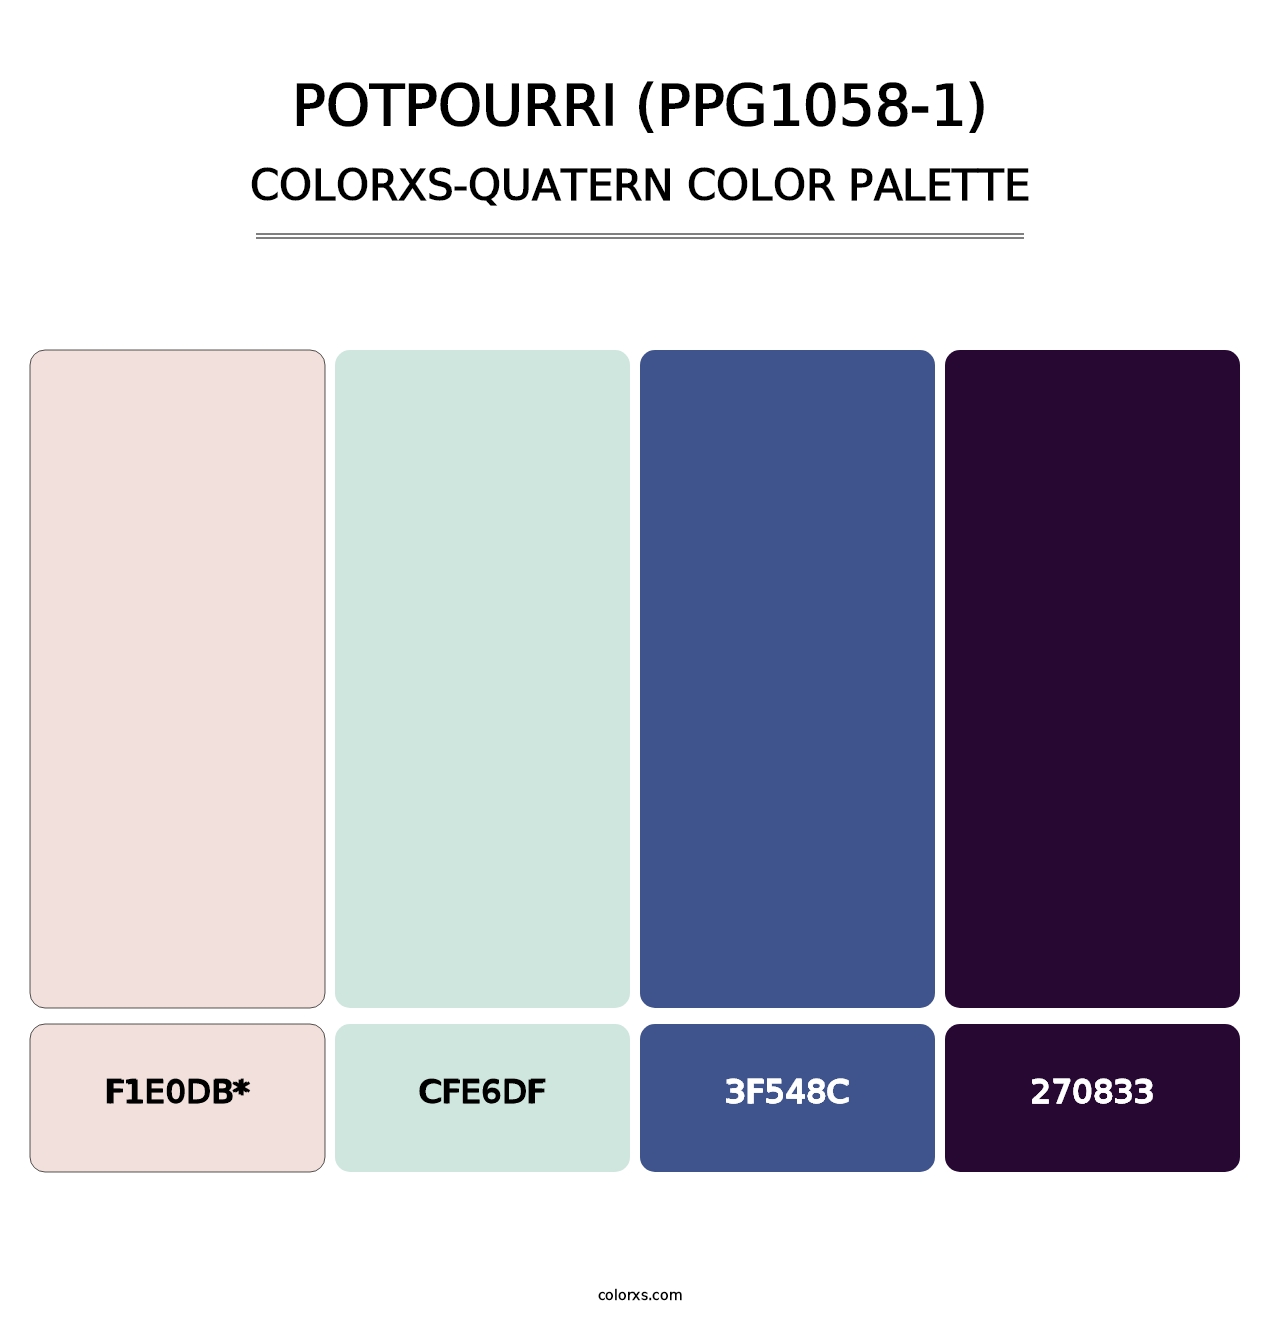 Potpourri (PPG1058-1) - Colorxs Quatern Palette